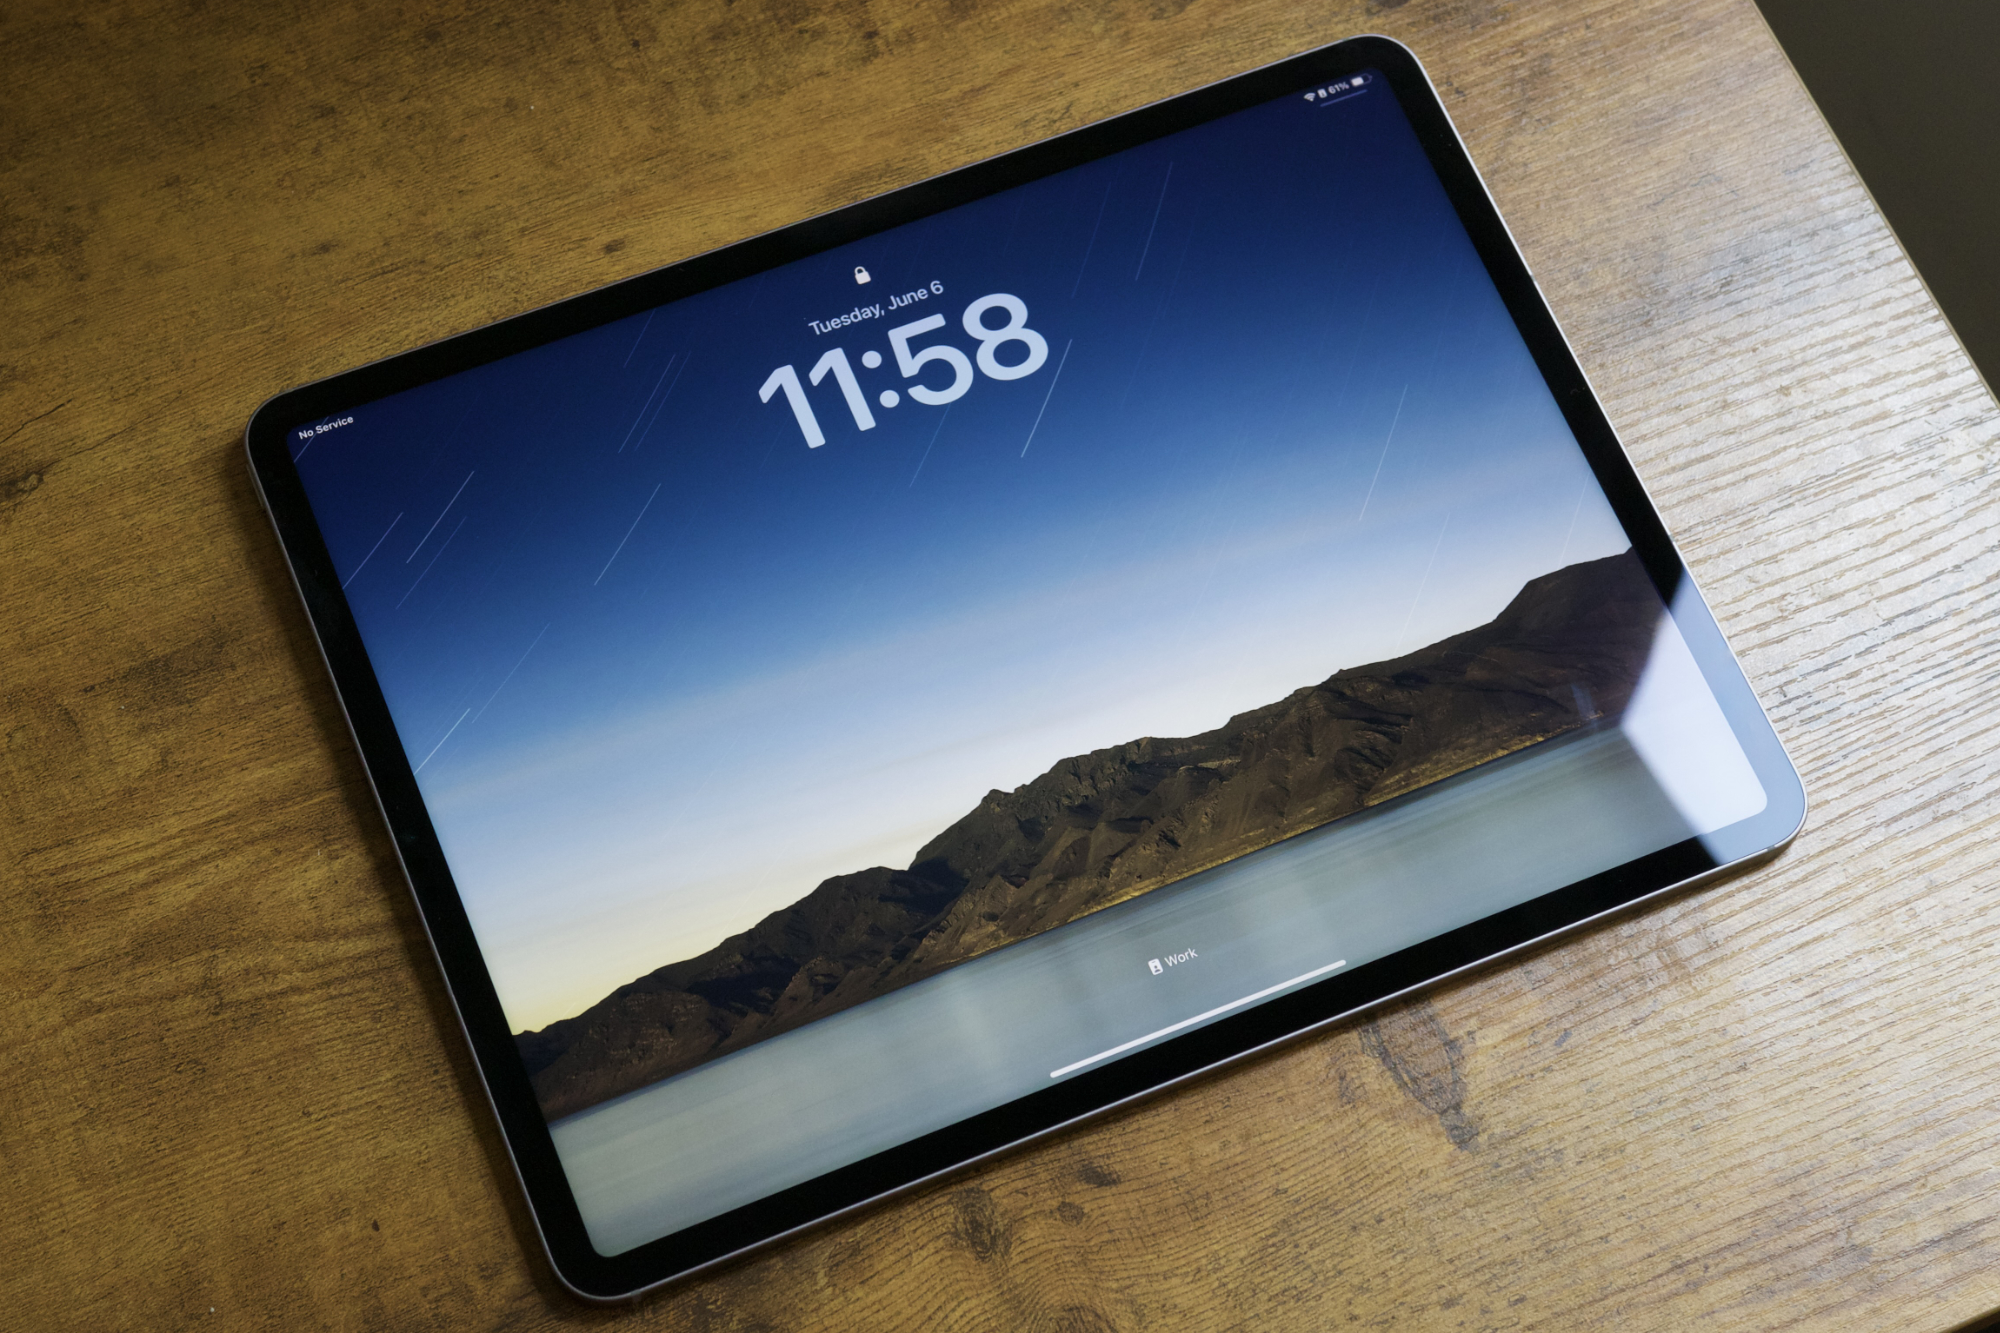  Apple iPad Pro (128GB, Wi-Fi, Silver) 12.9in Tablet (Renewed)  : Electronics